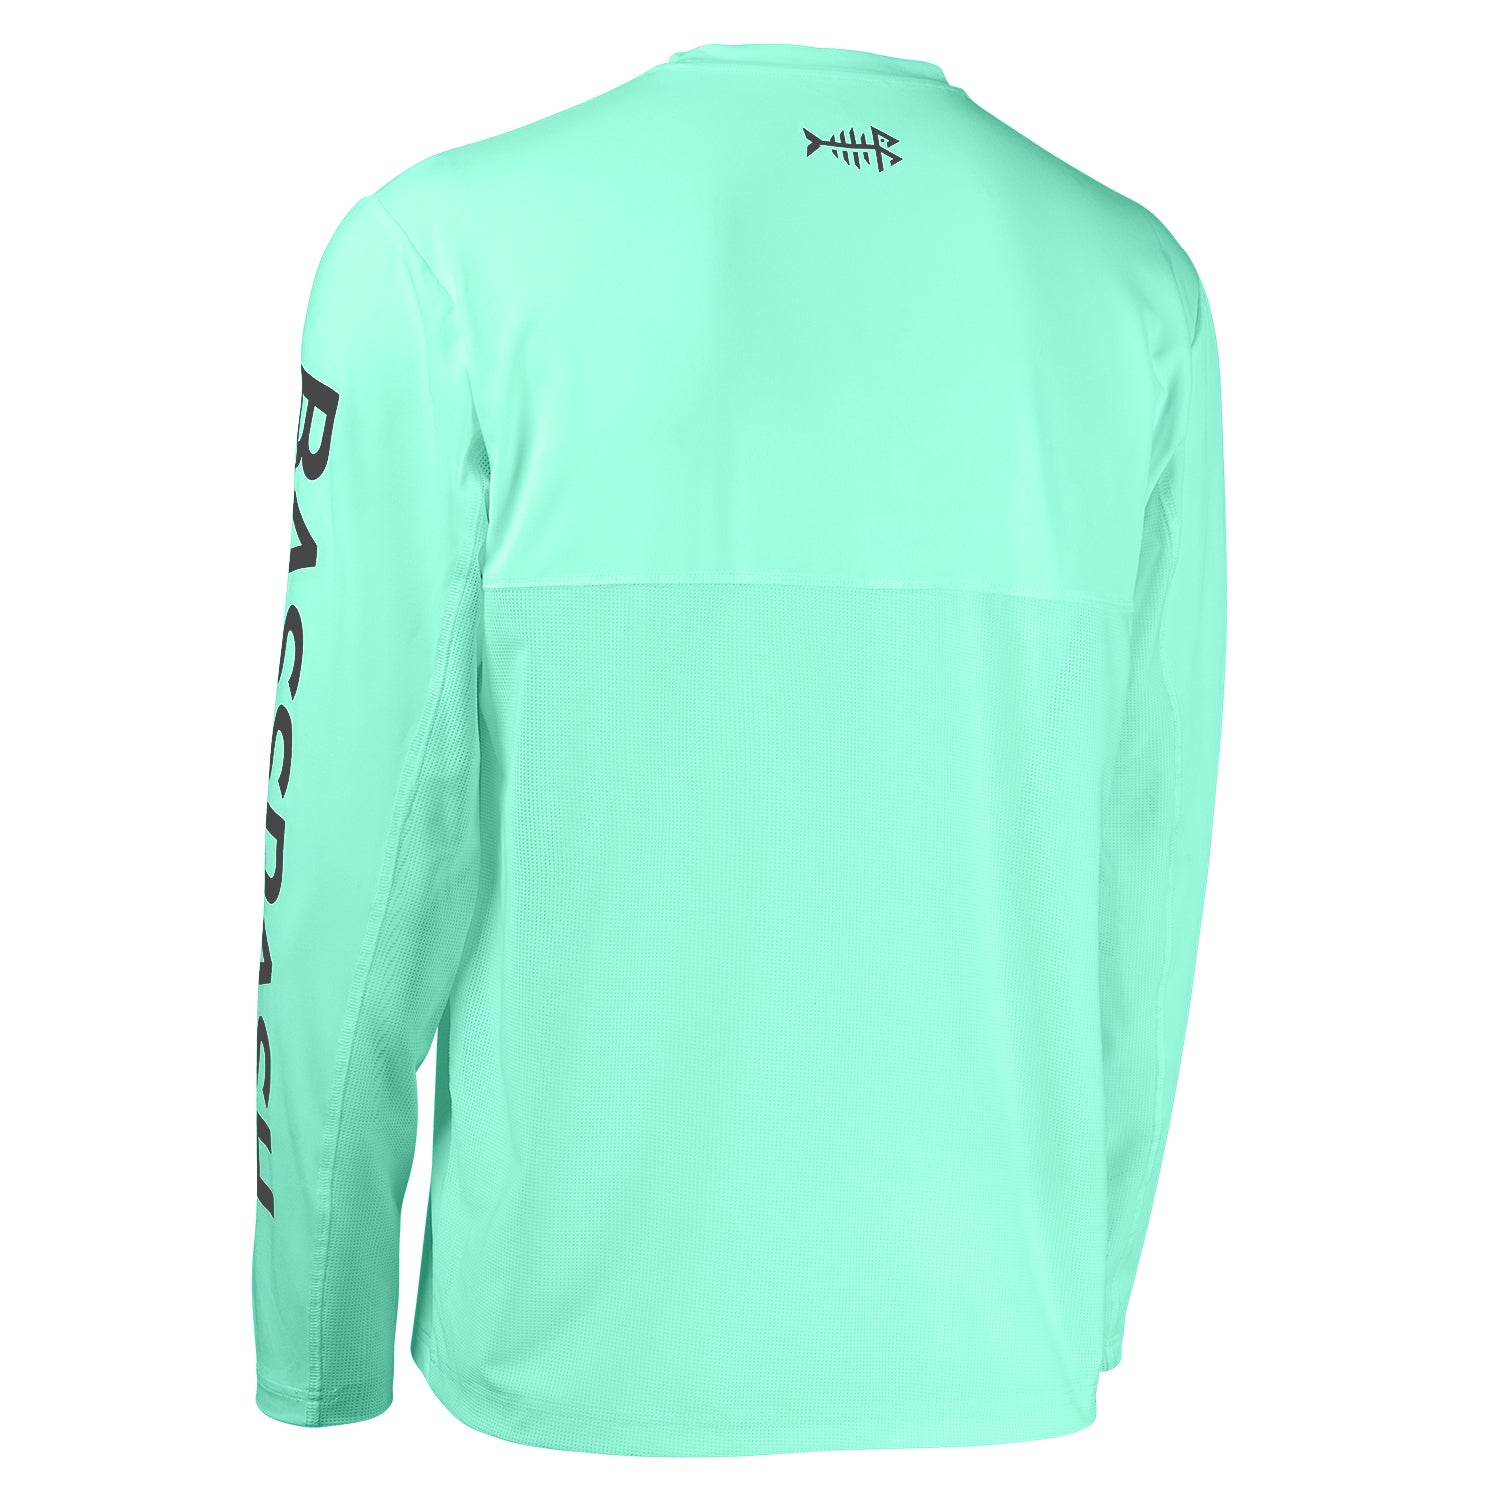 Bassdash Men's UPF 50+ Sun Protection Fishing Shirt Short Sleeve UV T-Shirt  : : Fashion